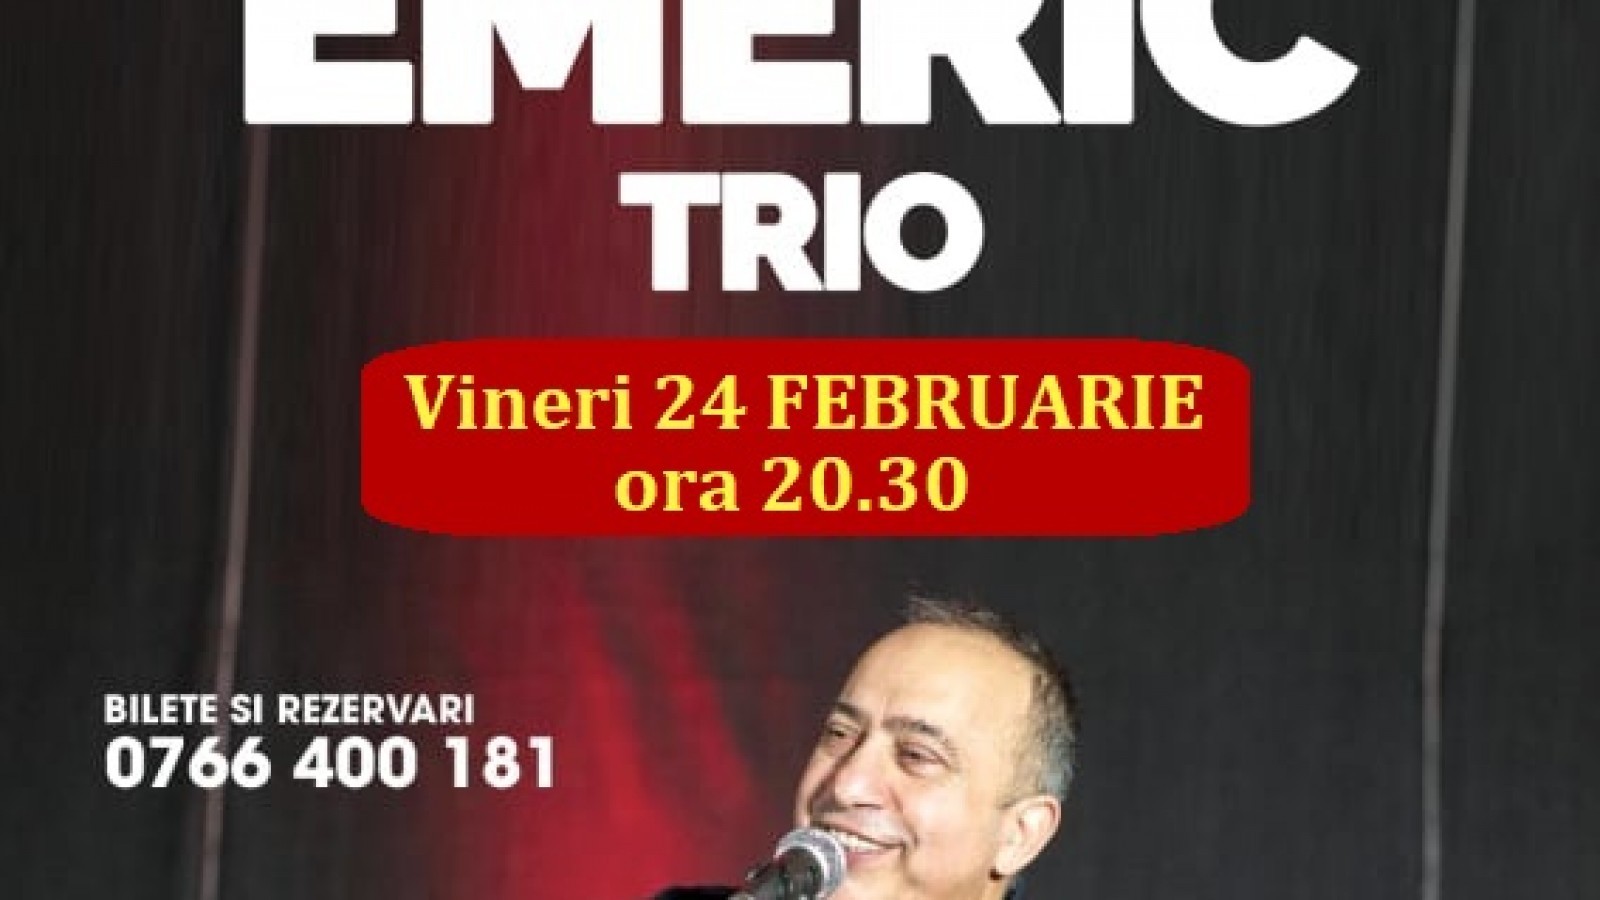 Concert "Emeric Trio" in Club Phoenix Constanta pe 24 februarie